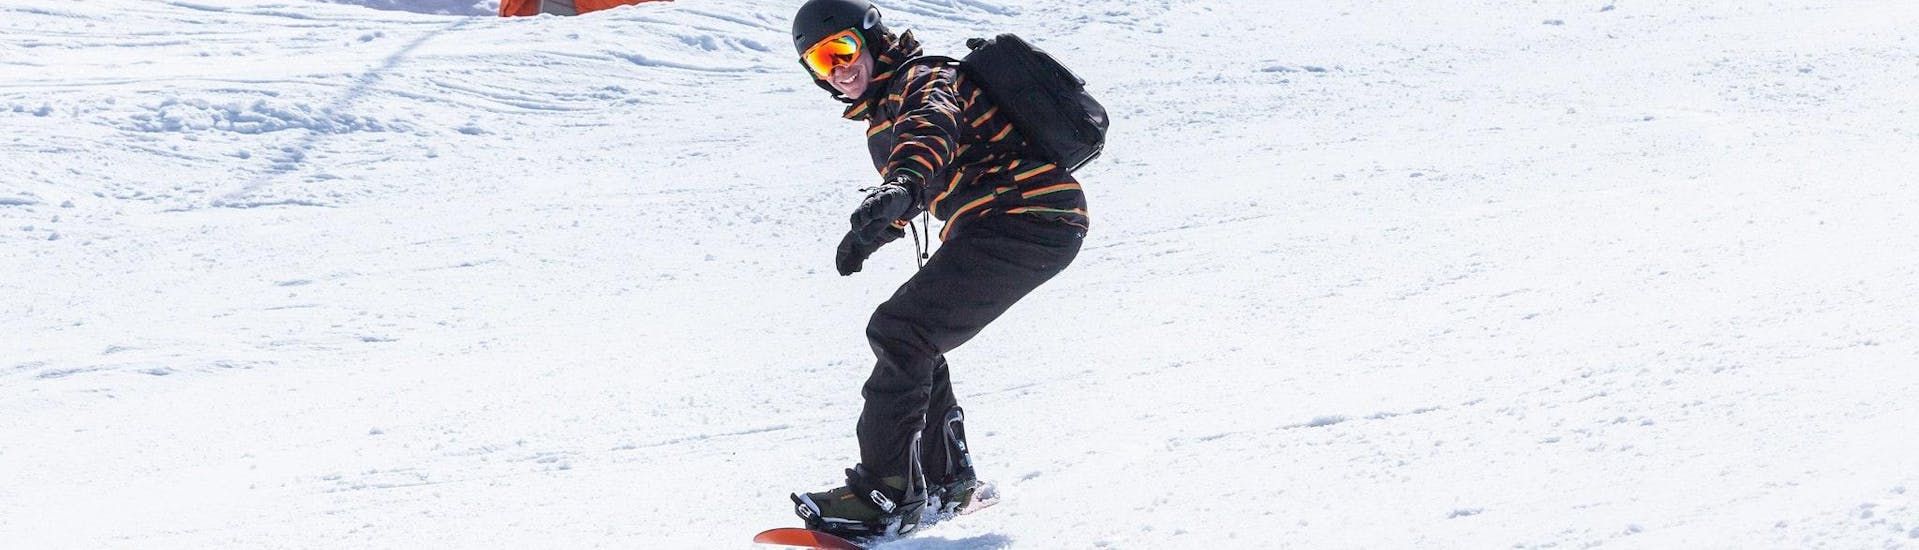 Privé snowboardlessen vanaf 5 jaar voor alle niveaus.